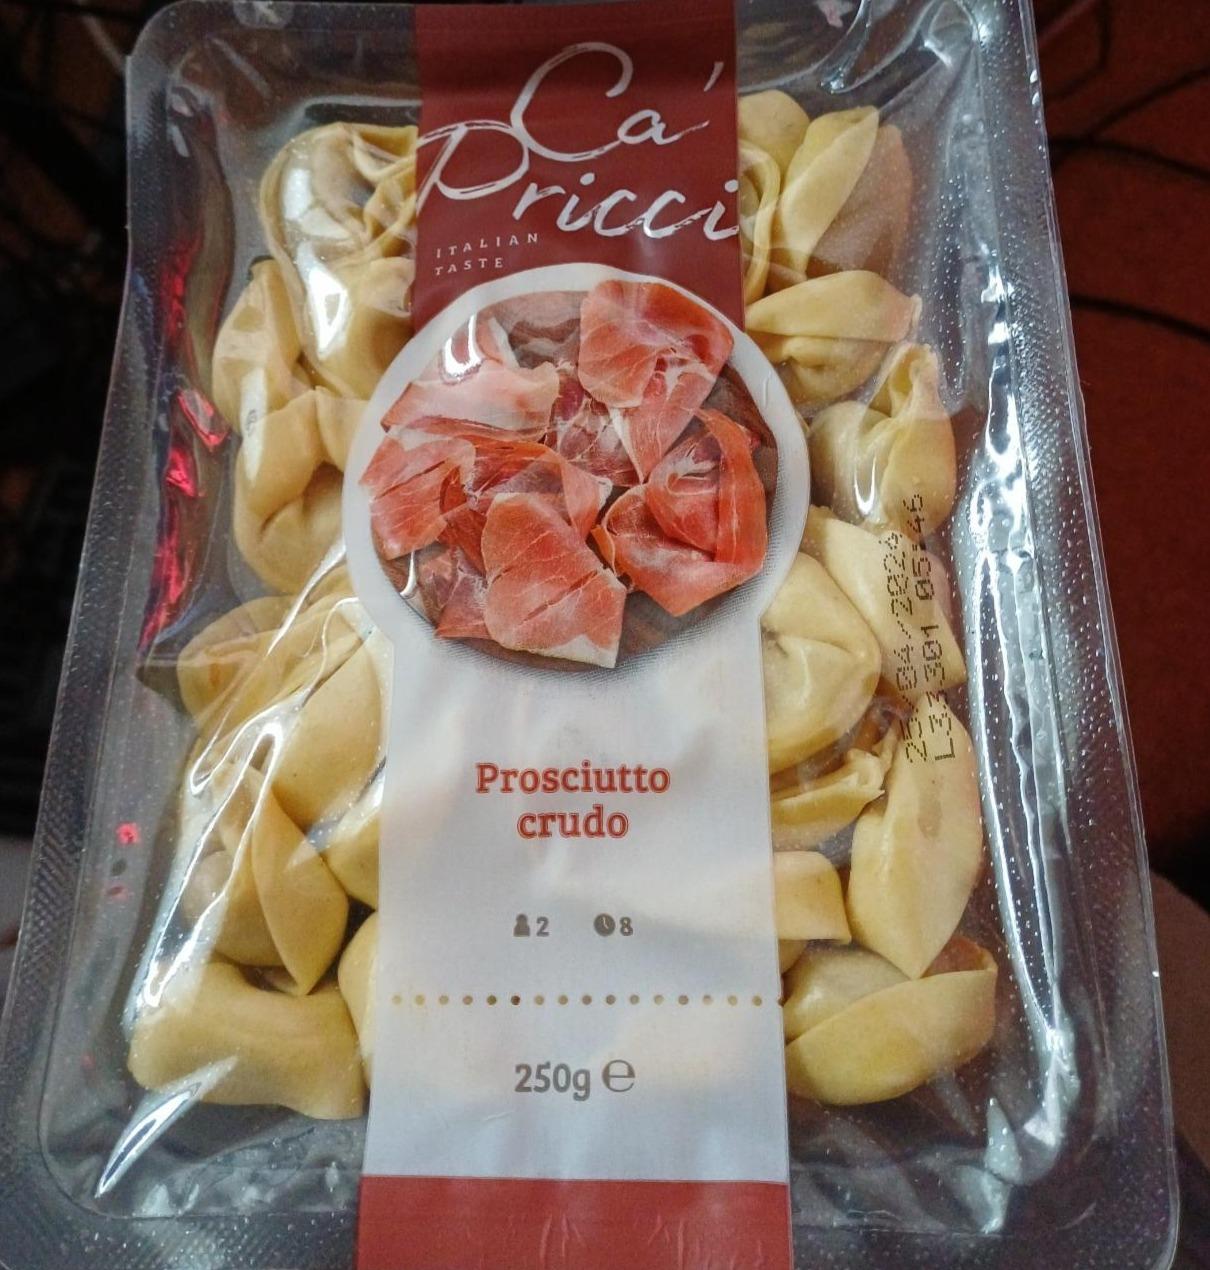 Fotografie - Italian taste Tortelloni Prosciutto crudo Ca'Pricci